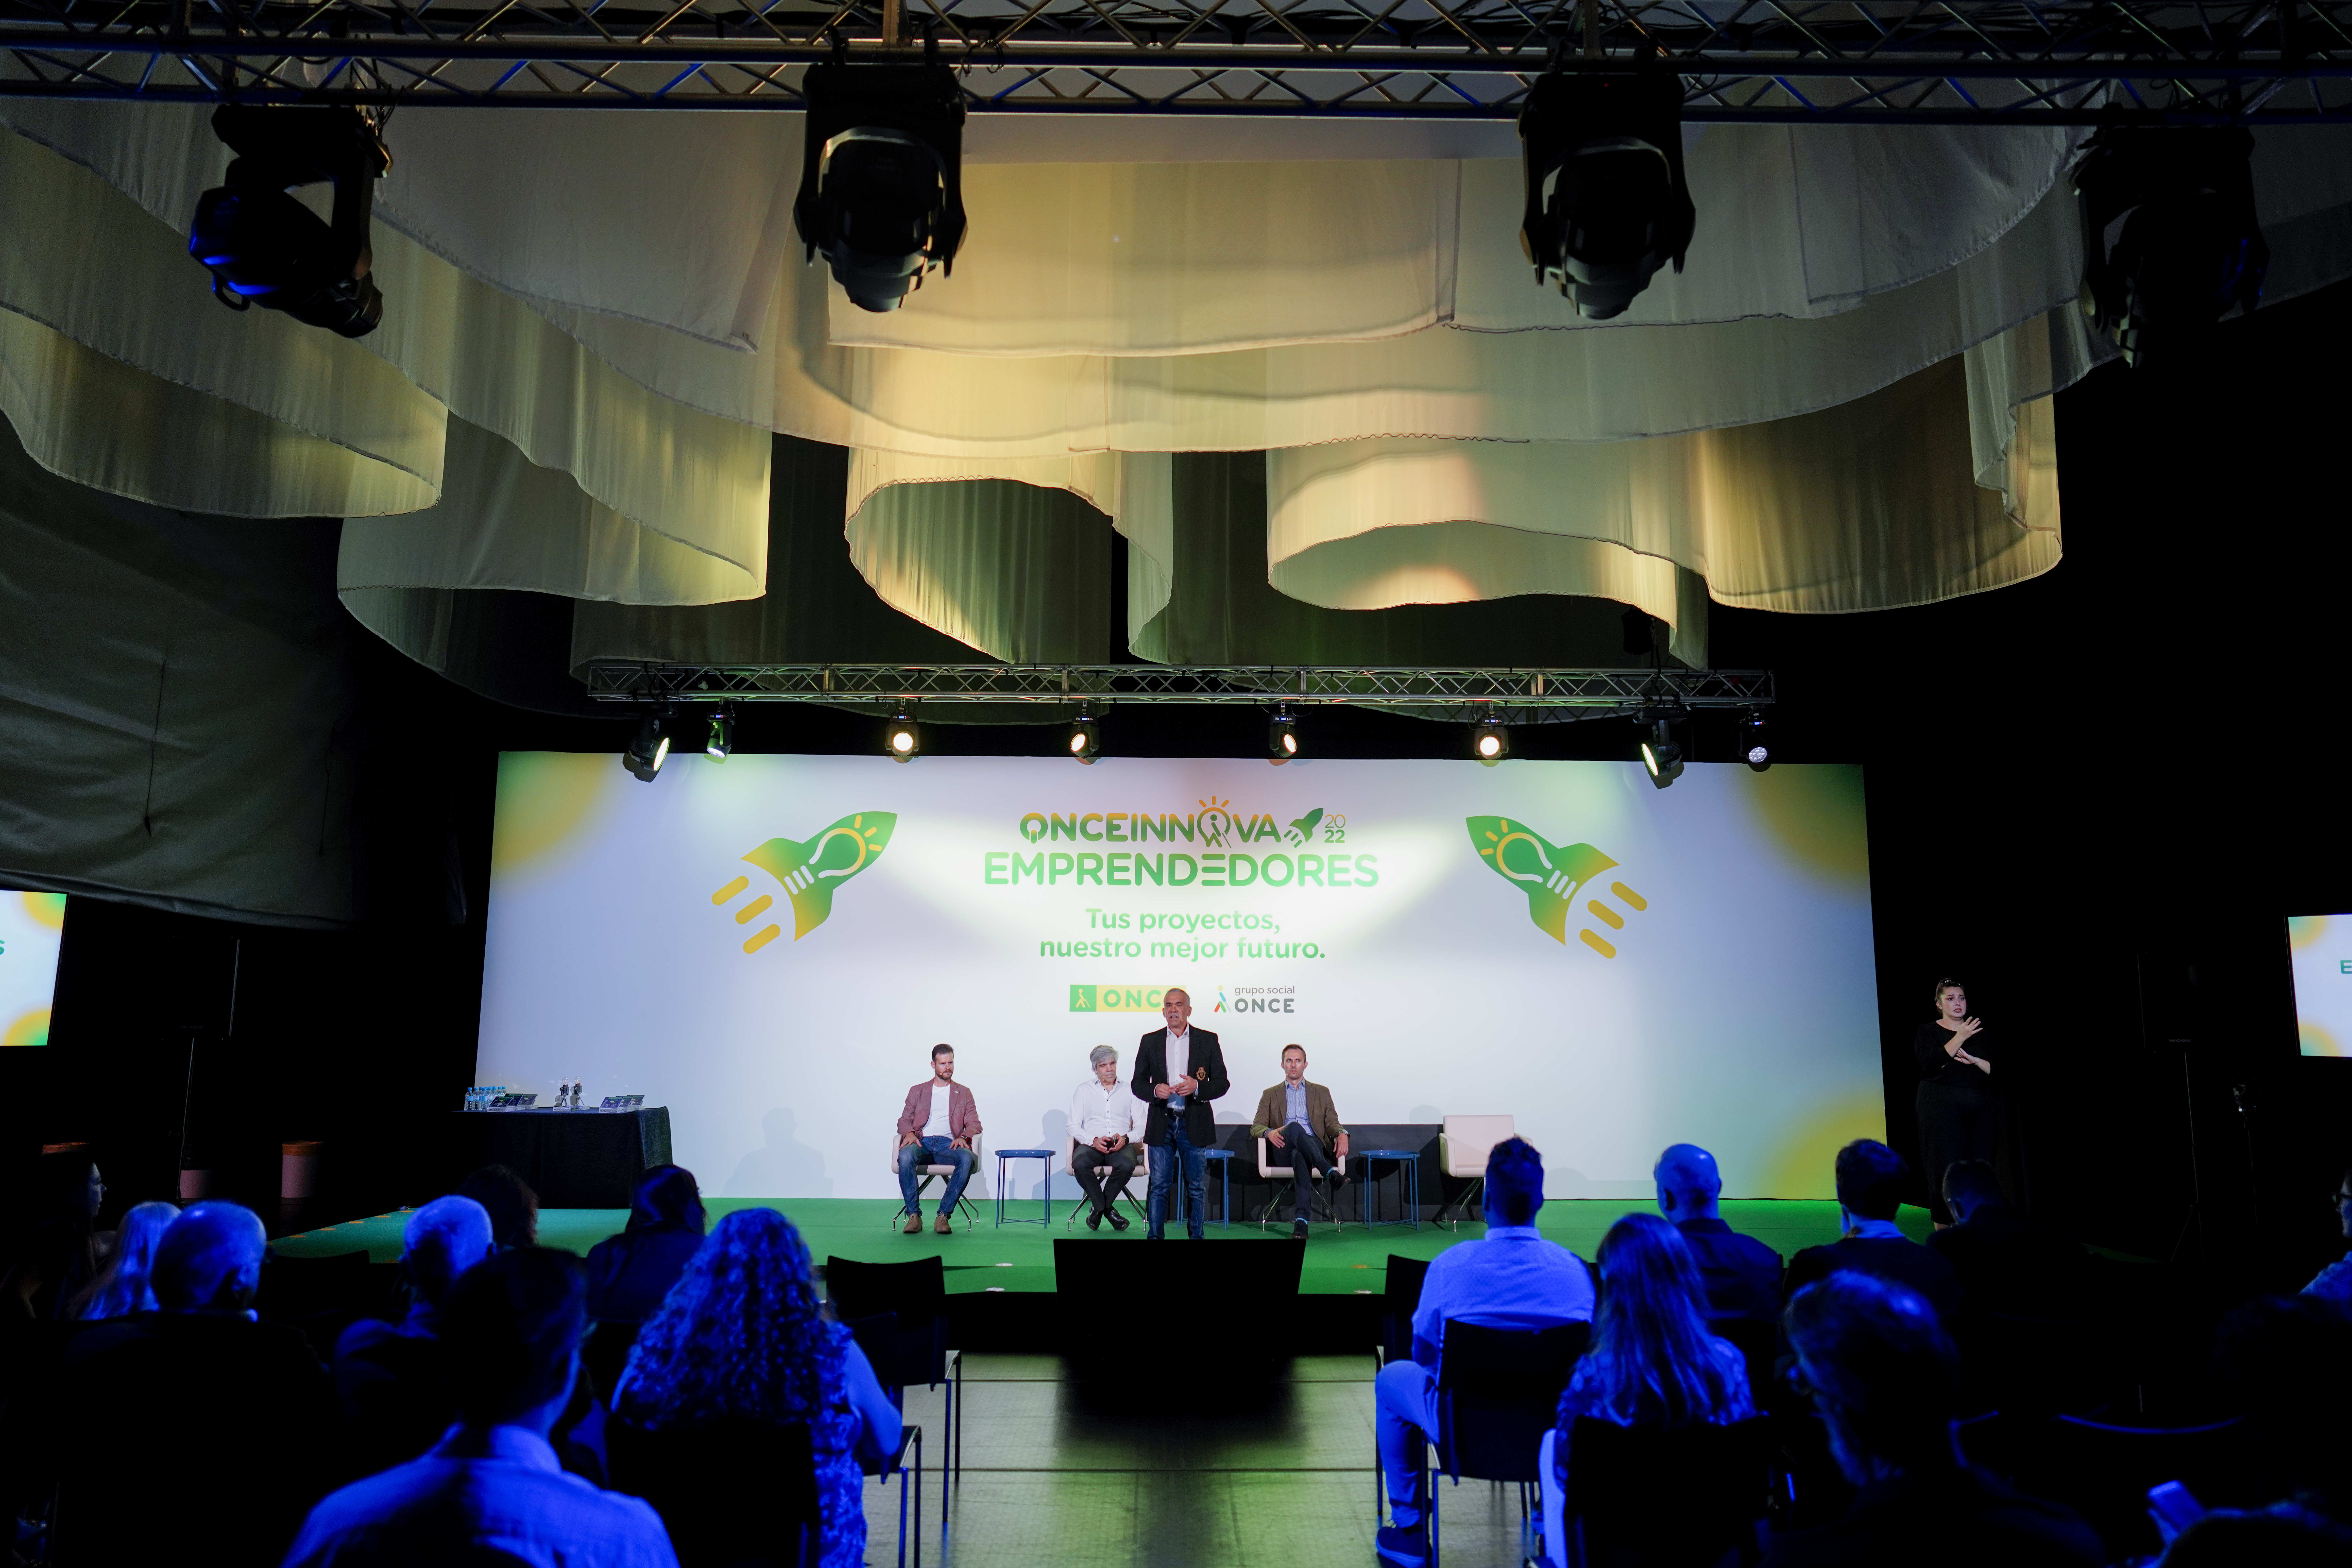 Foto frontal del escenario de ONCE Innova Emprendedores 2022, imagen desde el público con focos apuntando al escenario y una nube de telas en el techo.